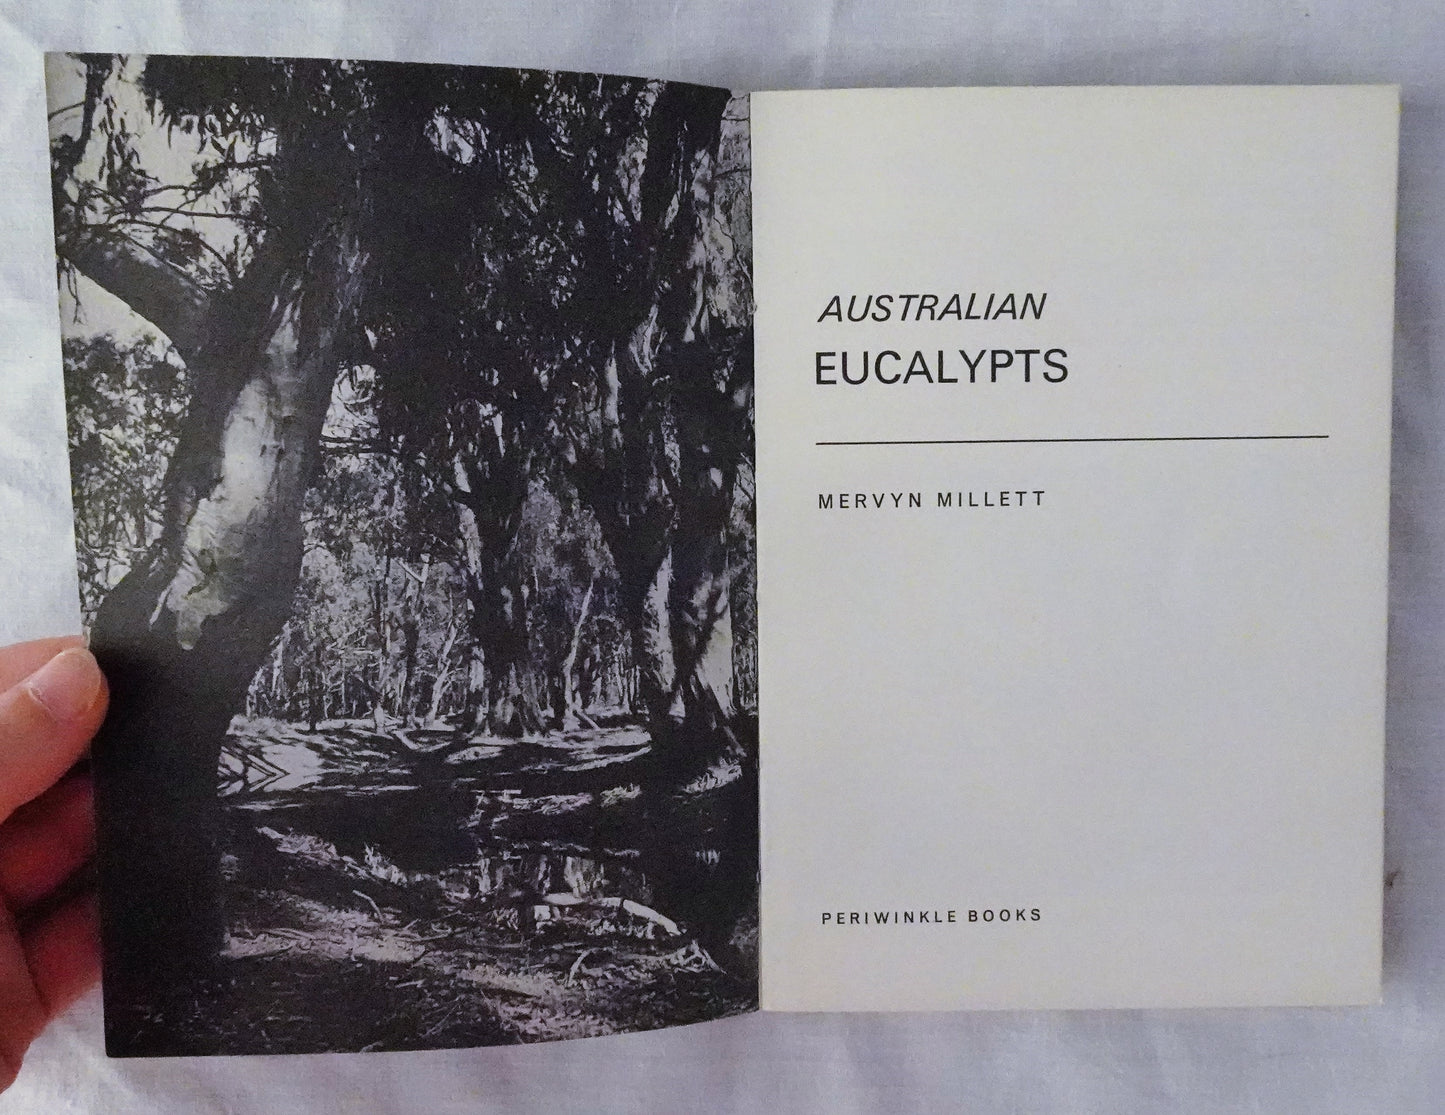 Australian Eucalypts by Mervyn Millett